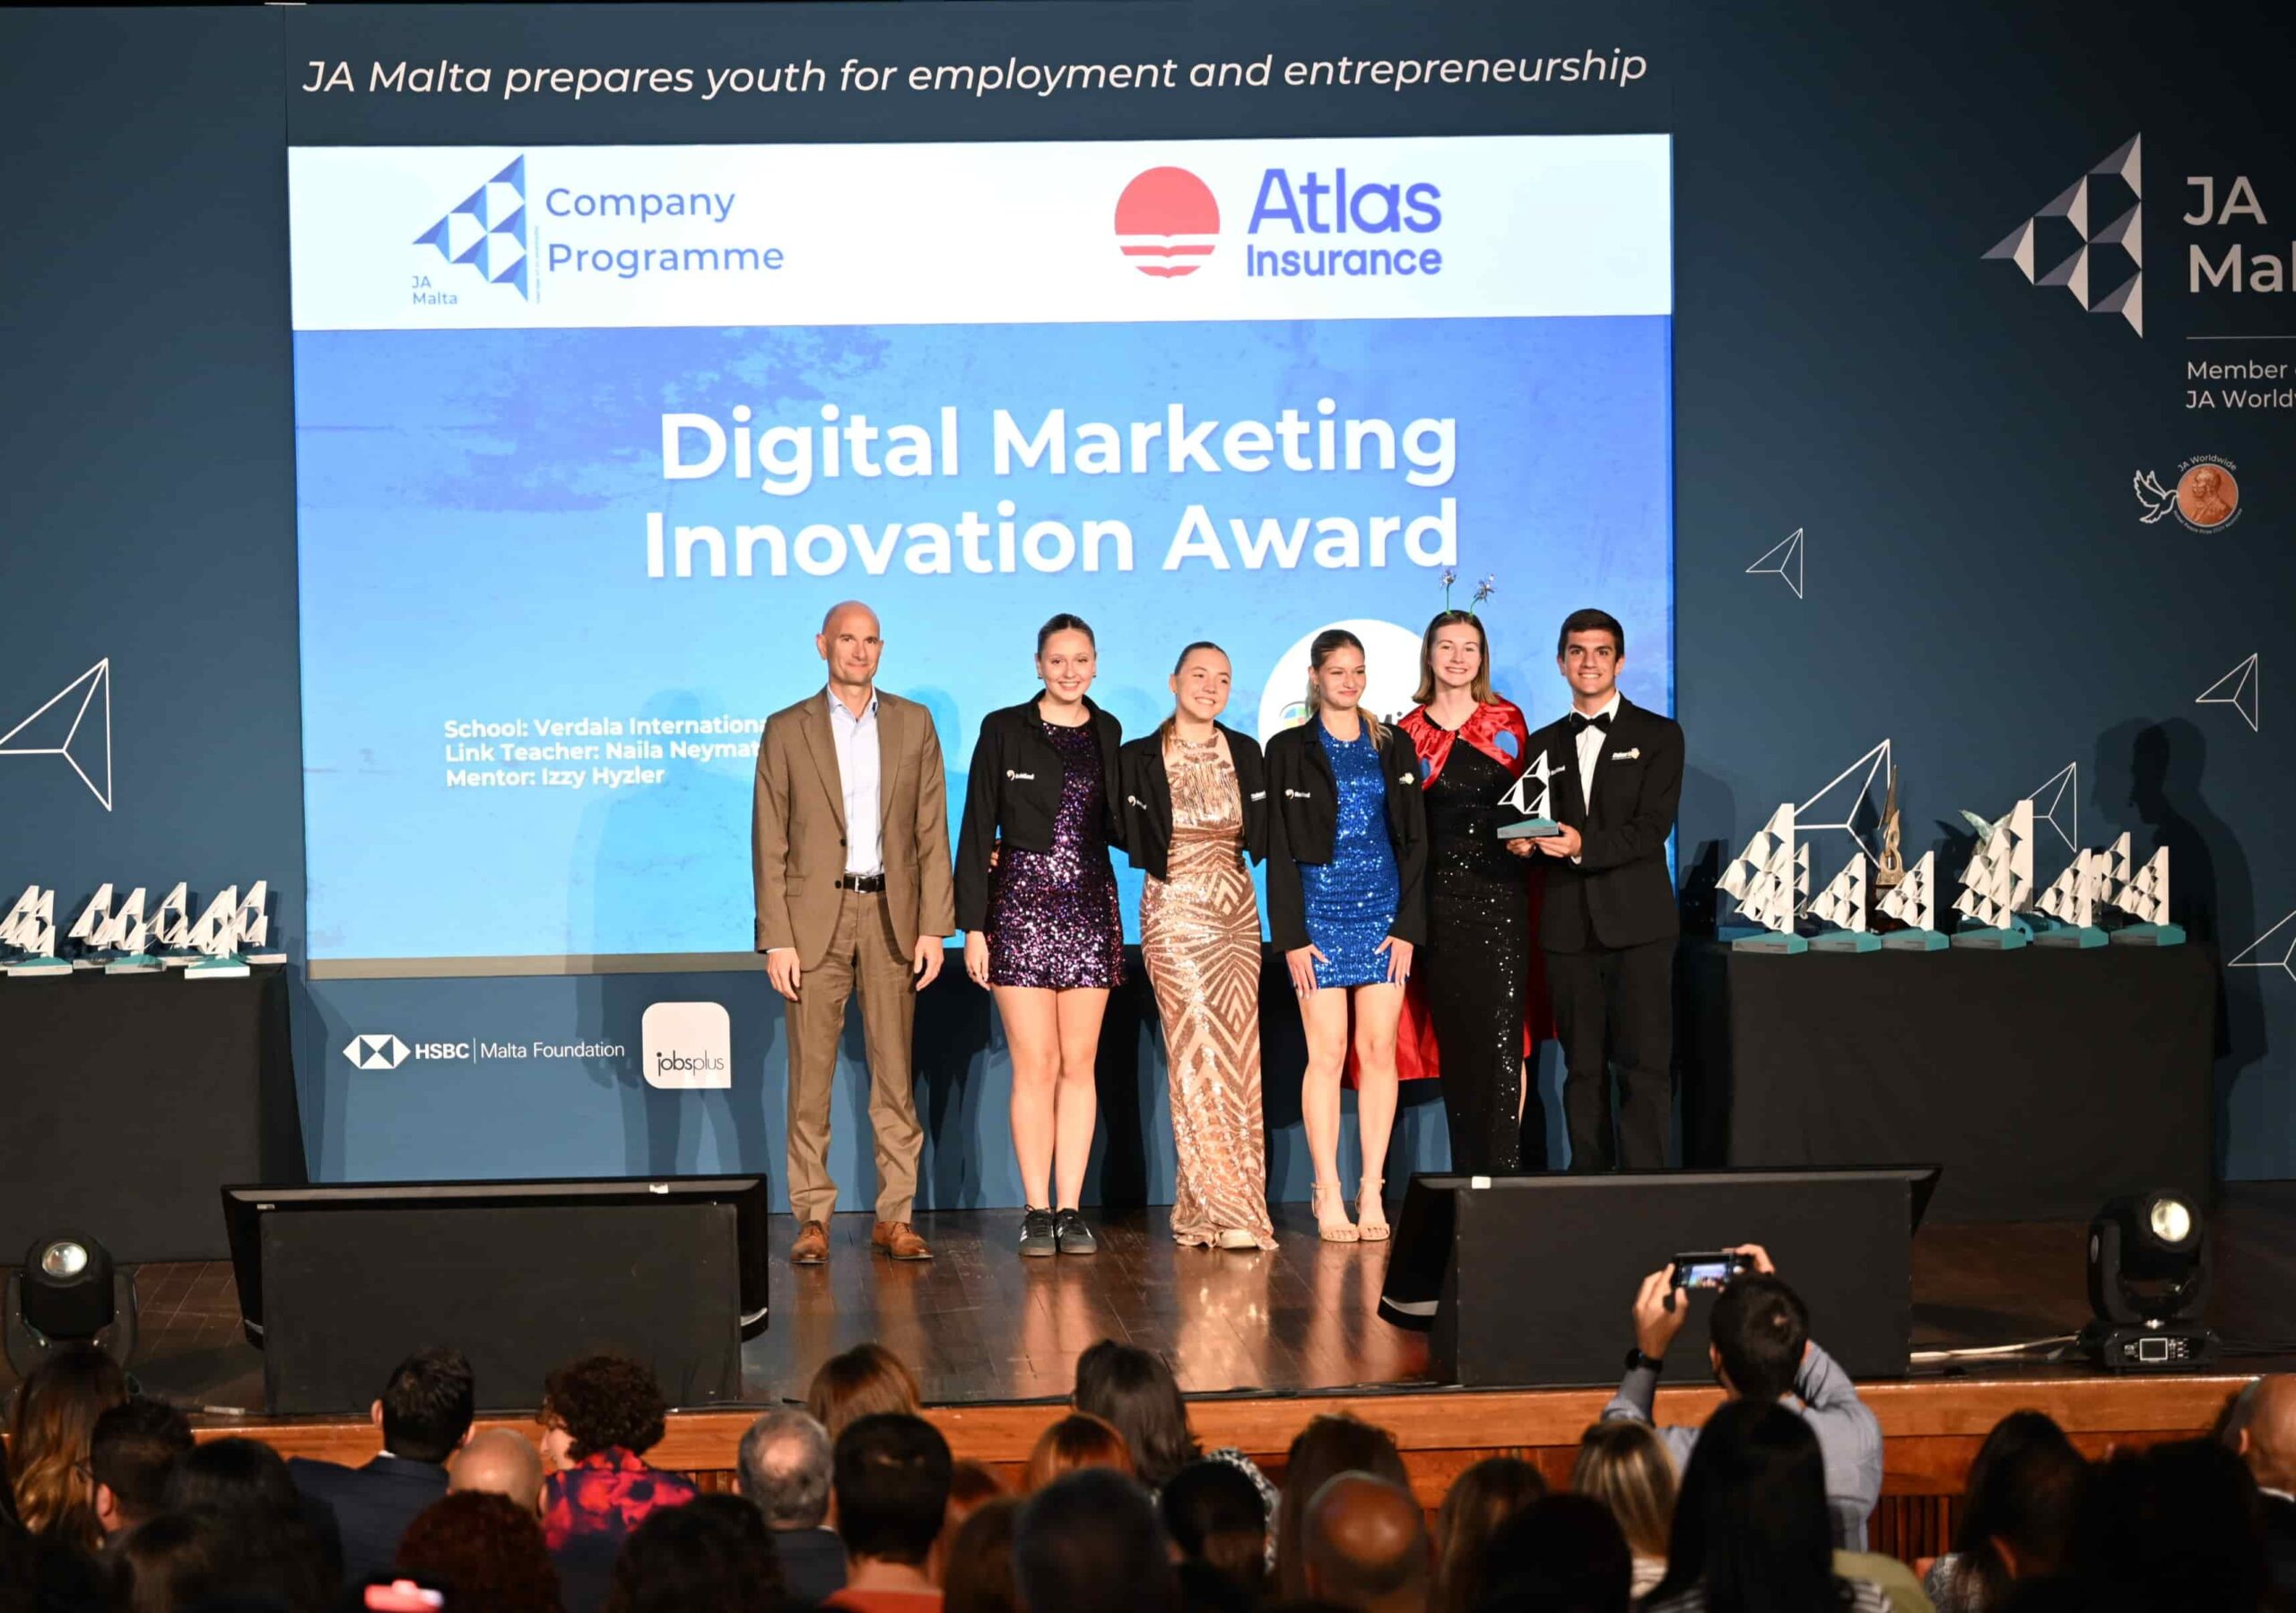 Atlas Insurance Presents Digital Marketing Innovation Award at JA Malta’s Finals and Awards Event